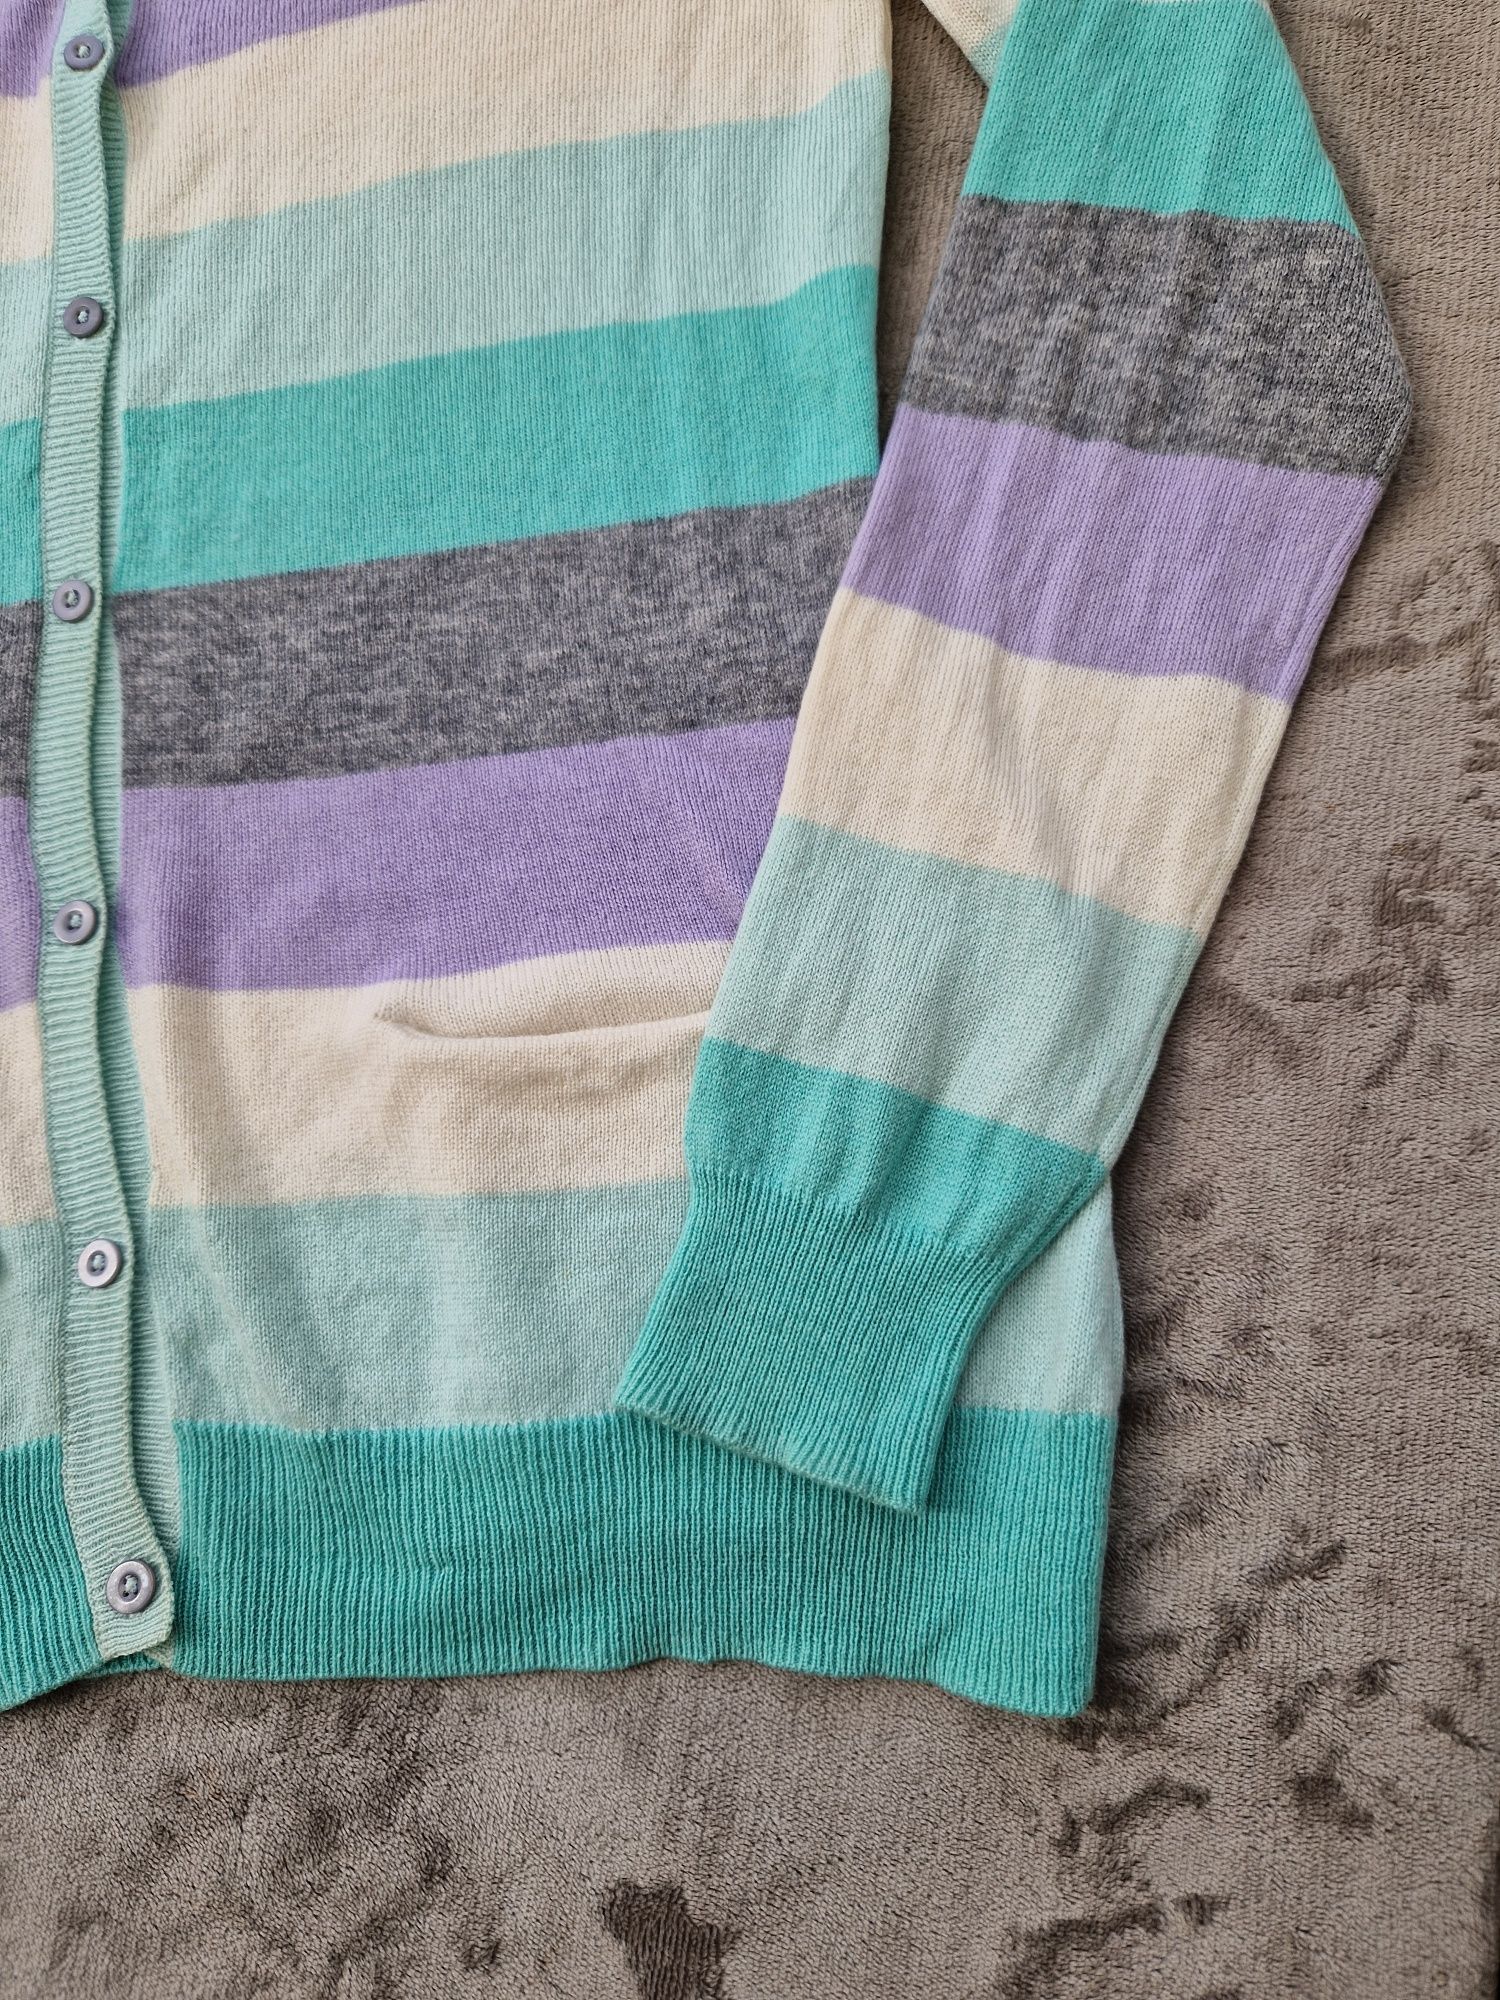 Merino kaszmir piękny sweterek PUBLIC pastelowe kolory CUDO